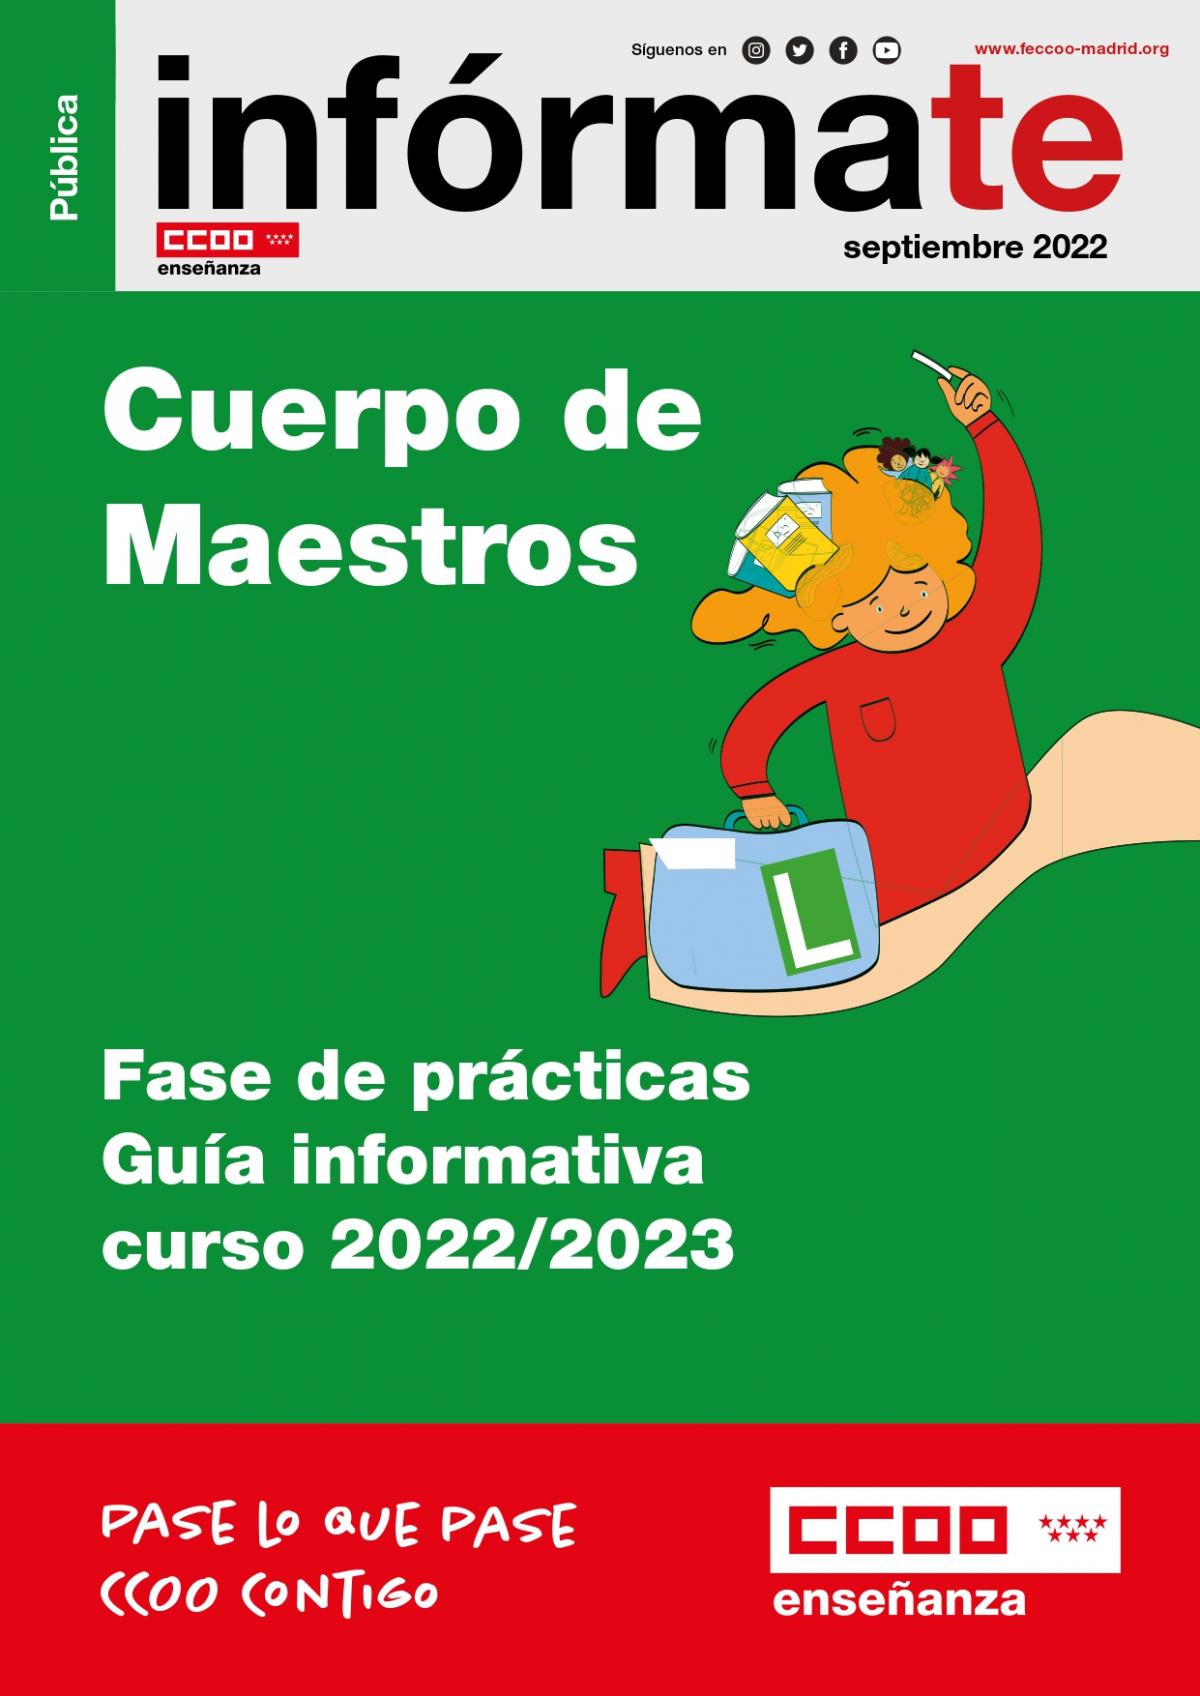 Guía informativa curso 2022/2023